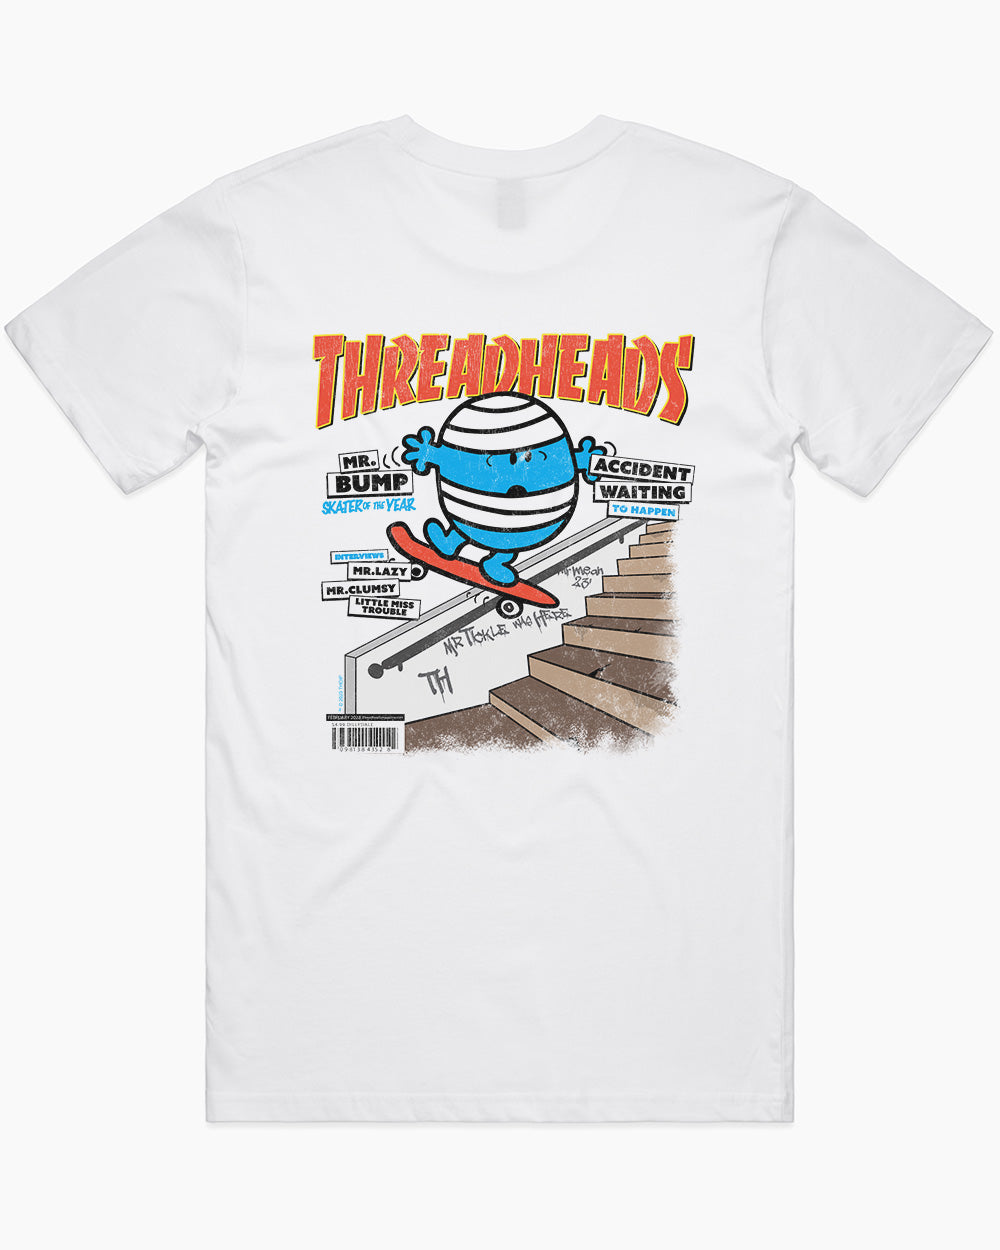 Mr. Bump T-Shirt Australia Online #colour_white